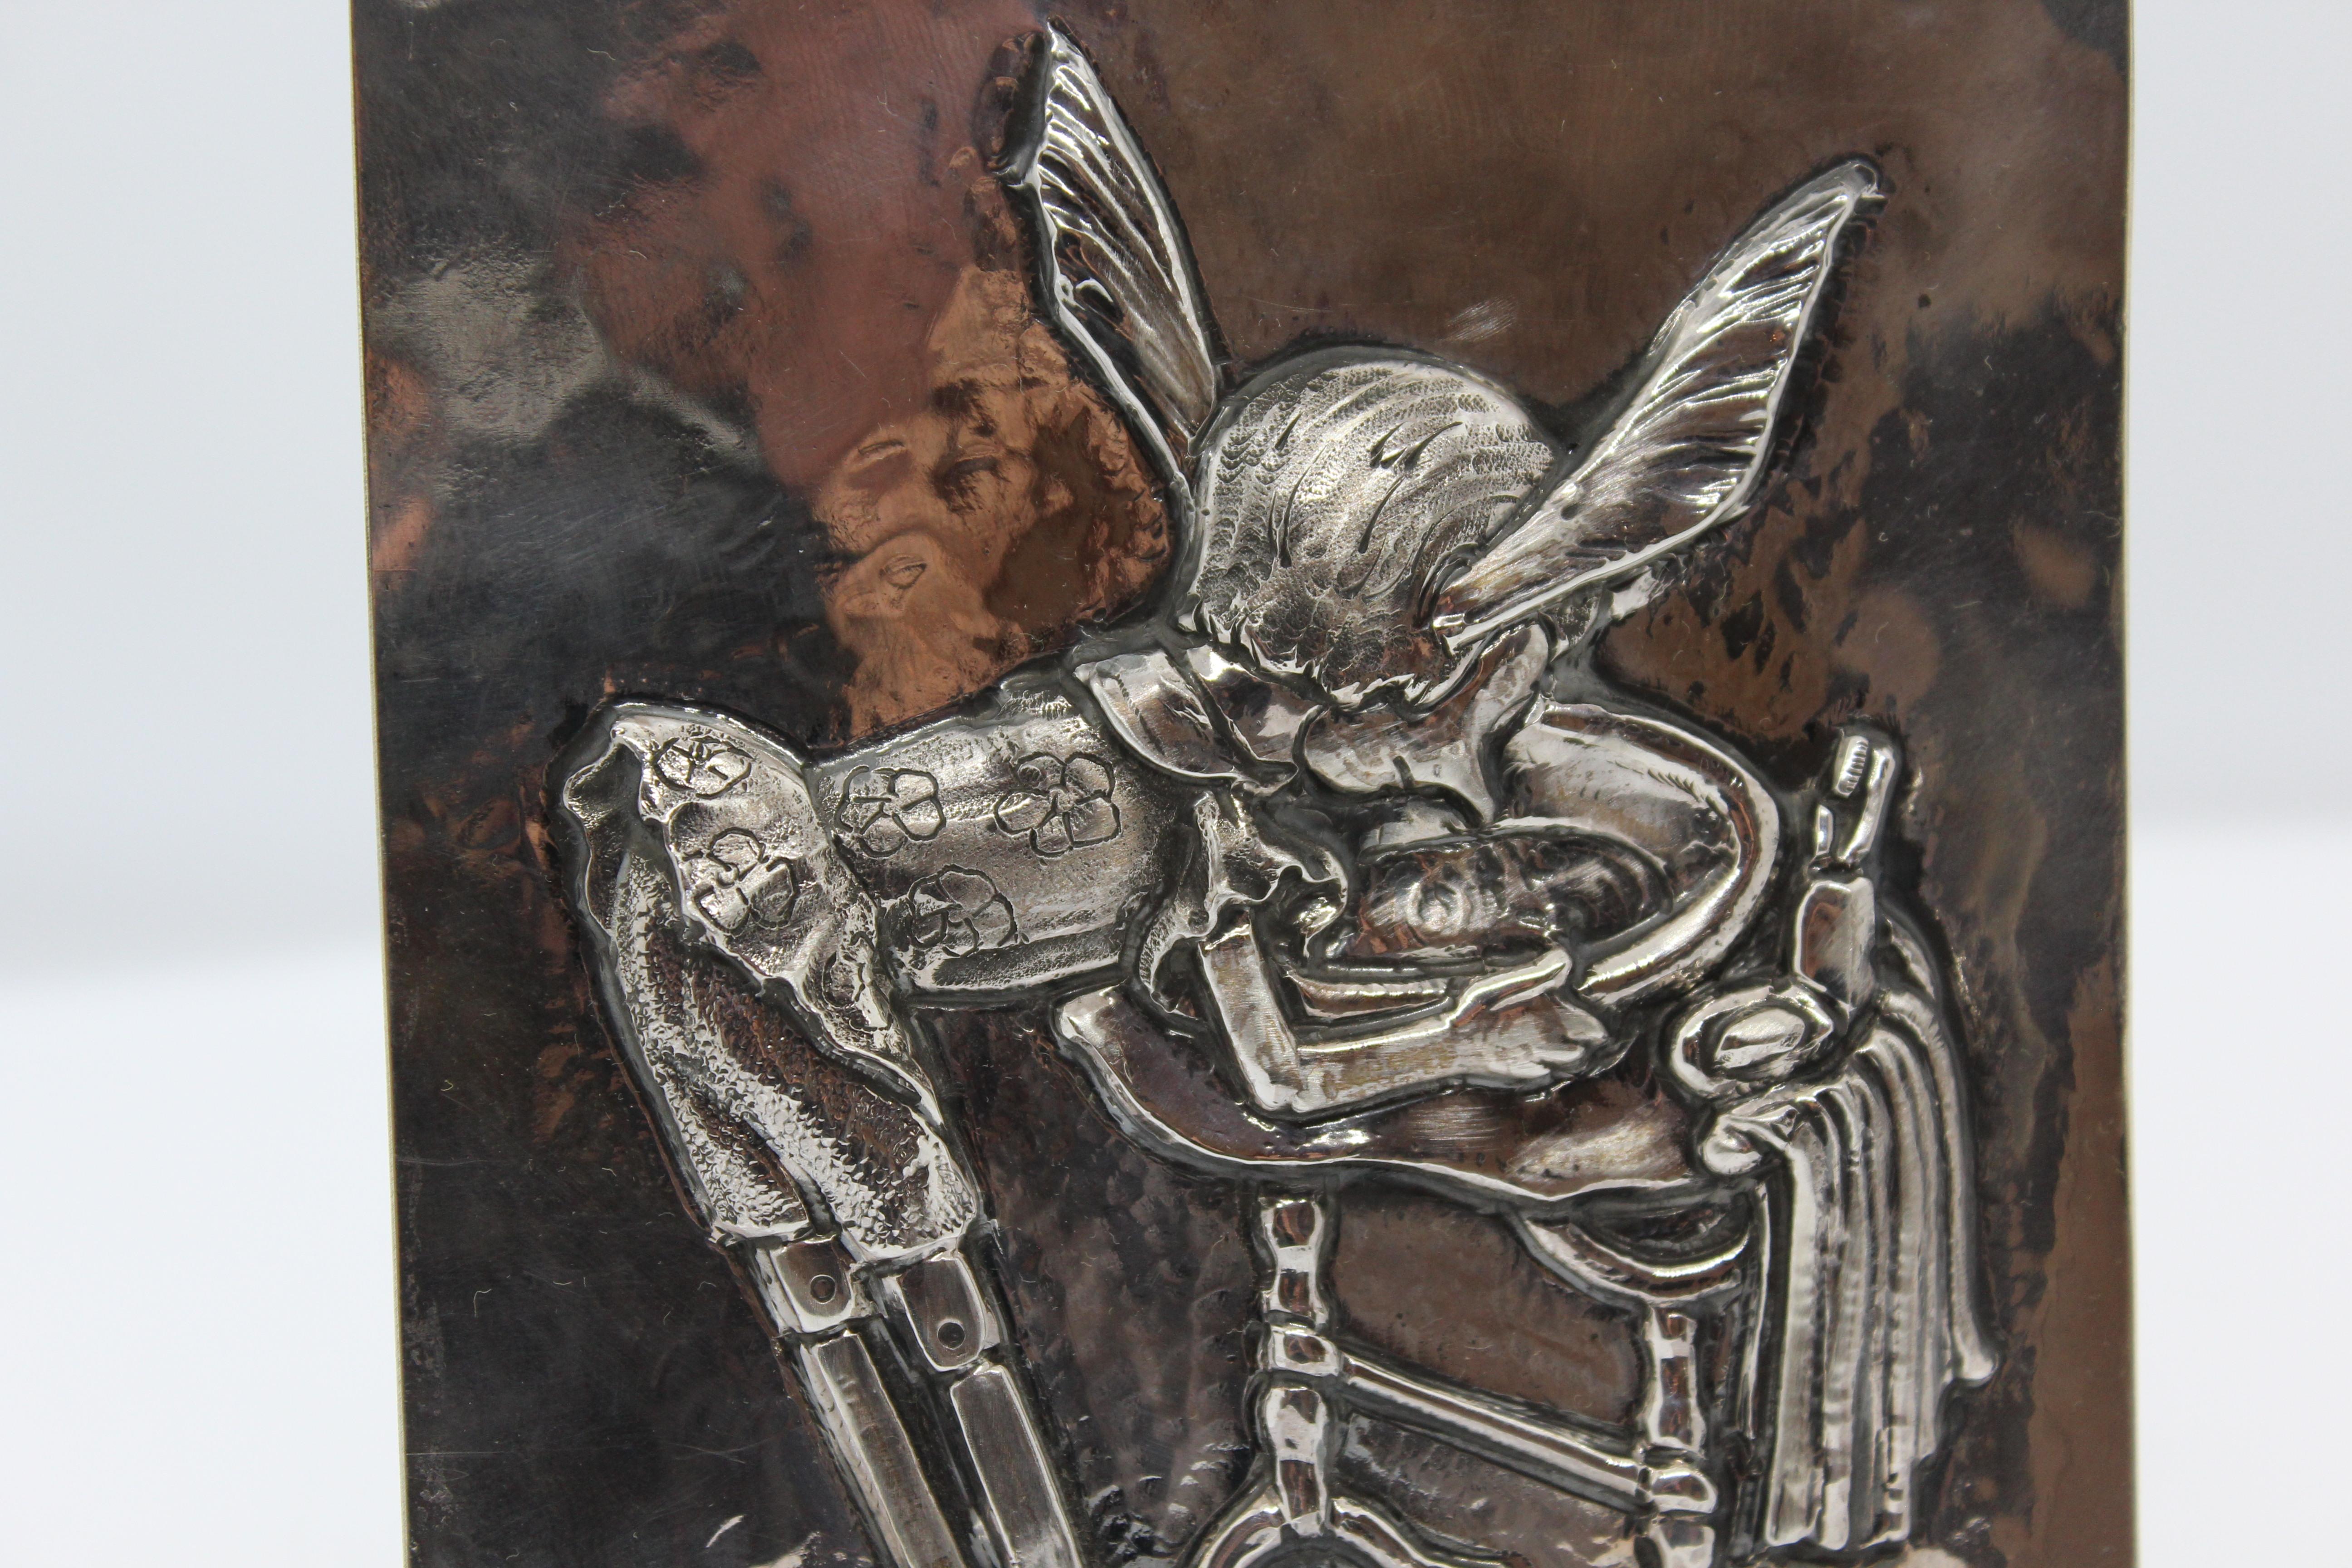 Pinocchio von einem Florentiner Künstler auf einer Silberplatte geschnitzt, komplett in Italien hergestellt.
Giuliano Foglia ziselierte die gesamte Oberfläche des Paneels.
